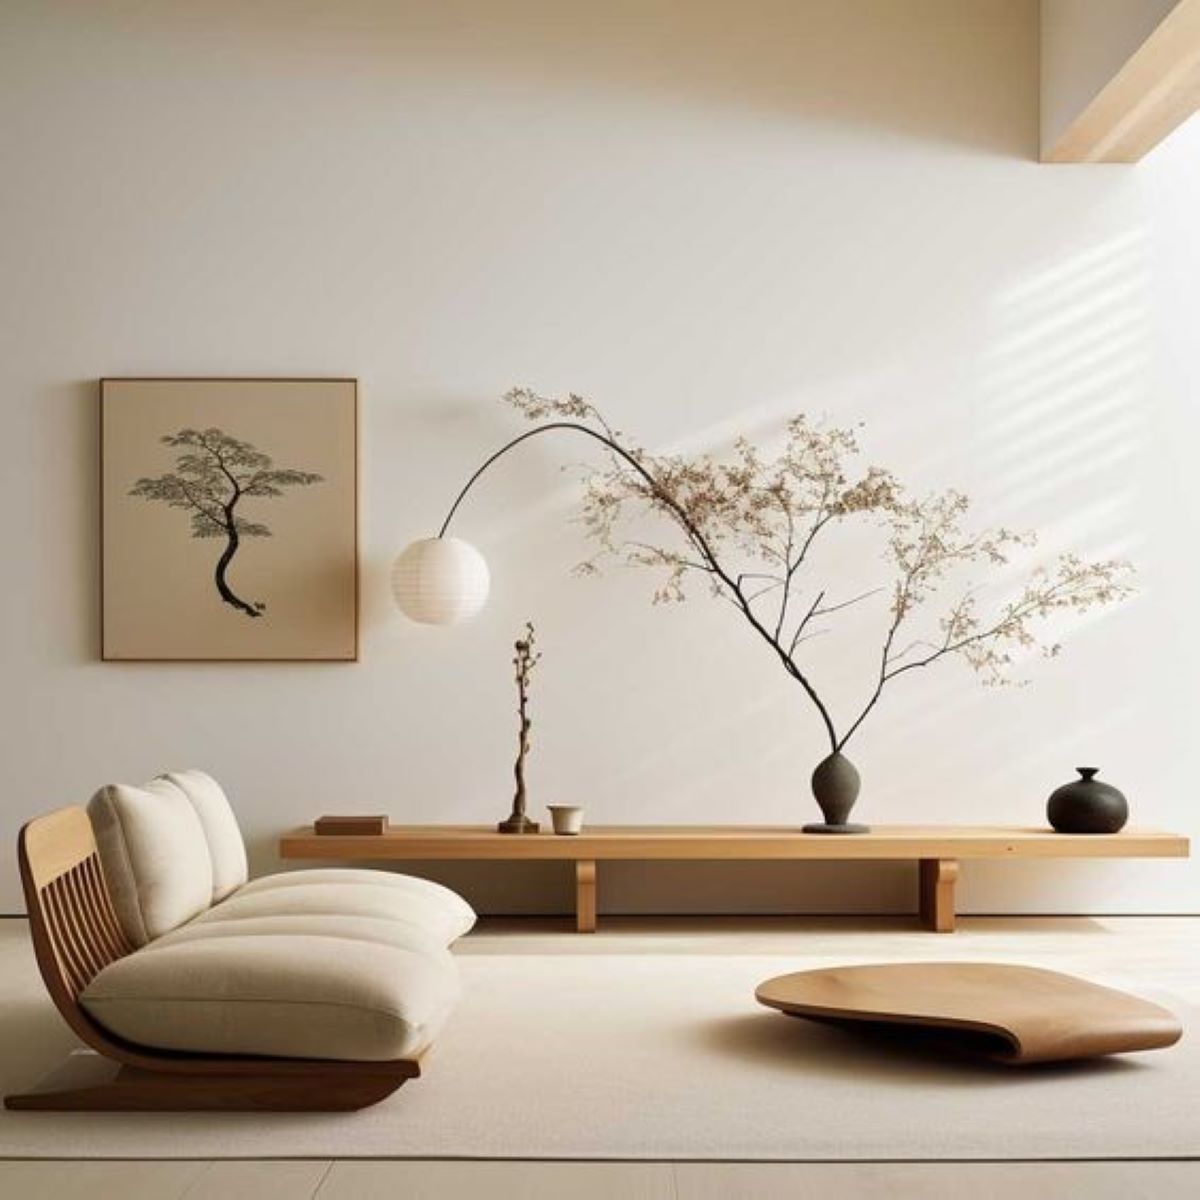 Quando bem construído, o estilo minimalista na decoração prova que menos é mais!